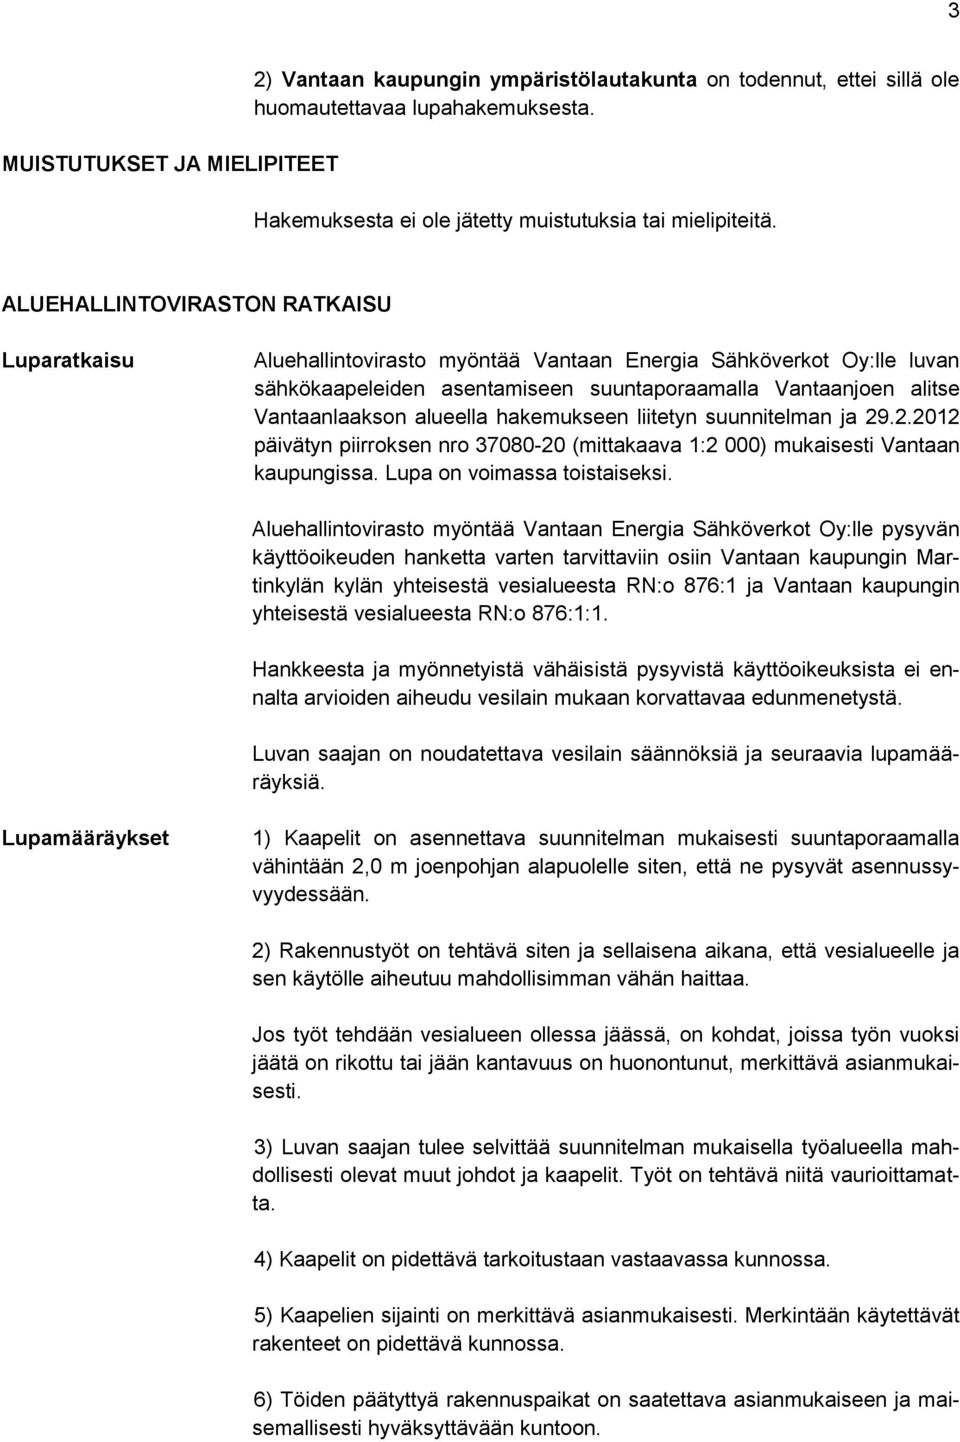 alueella hakemukseen liitetyn suunnitelman ja 29.2.2012 päivätyn piirroksen nro 37080-20 (mittakaava 1:2 000) mukaisesti Vantaan kaupungissa. Lupa on voimassa toistaiseksi.